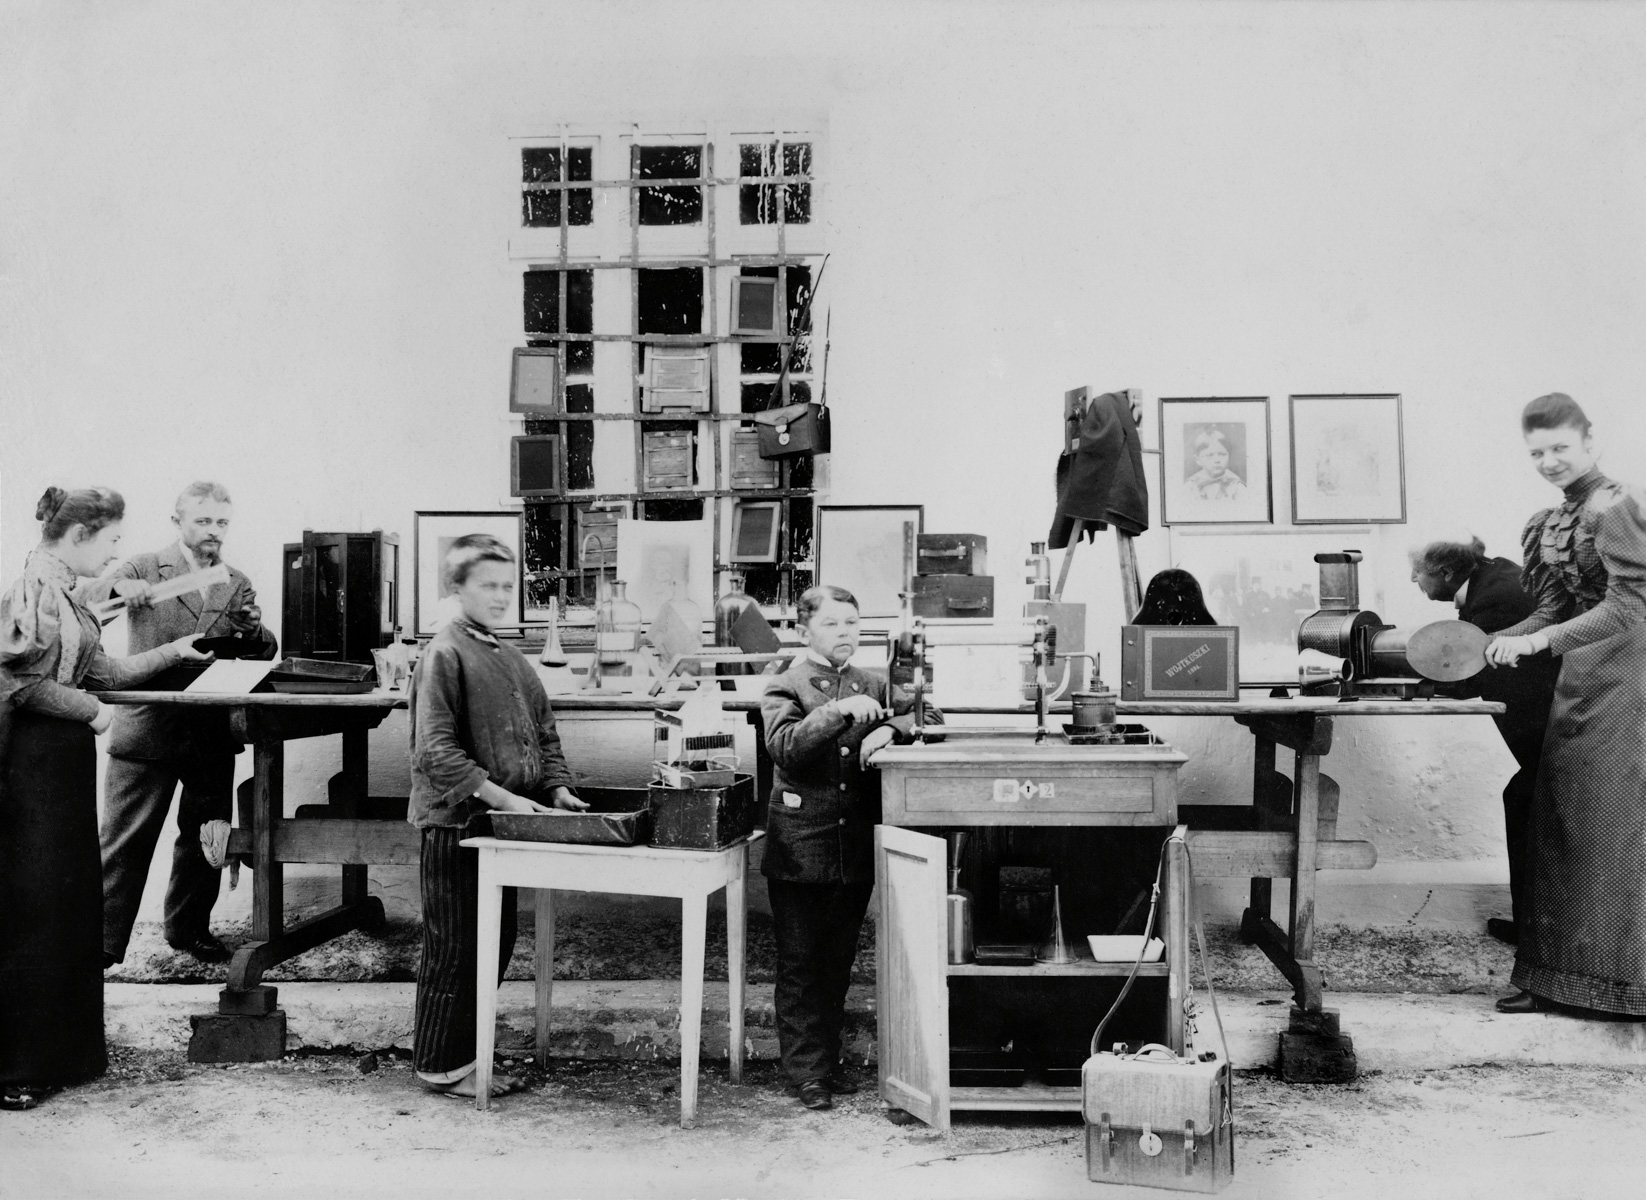 Atelier fotograficzne w Wojtkuszkach, 1895. Zbiory Narodowego Muzeum Sztuki im. M. K. Ciurlionisa w Kownie.